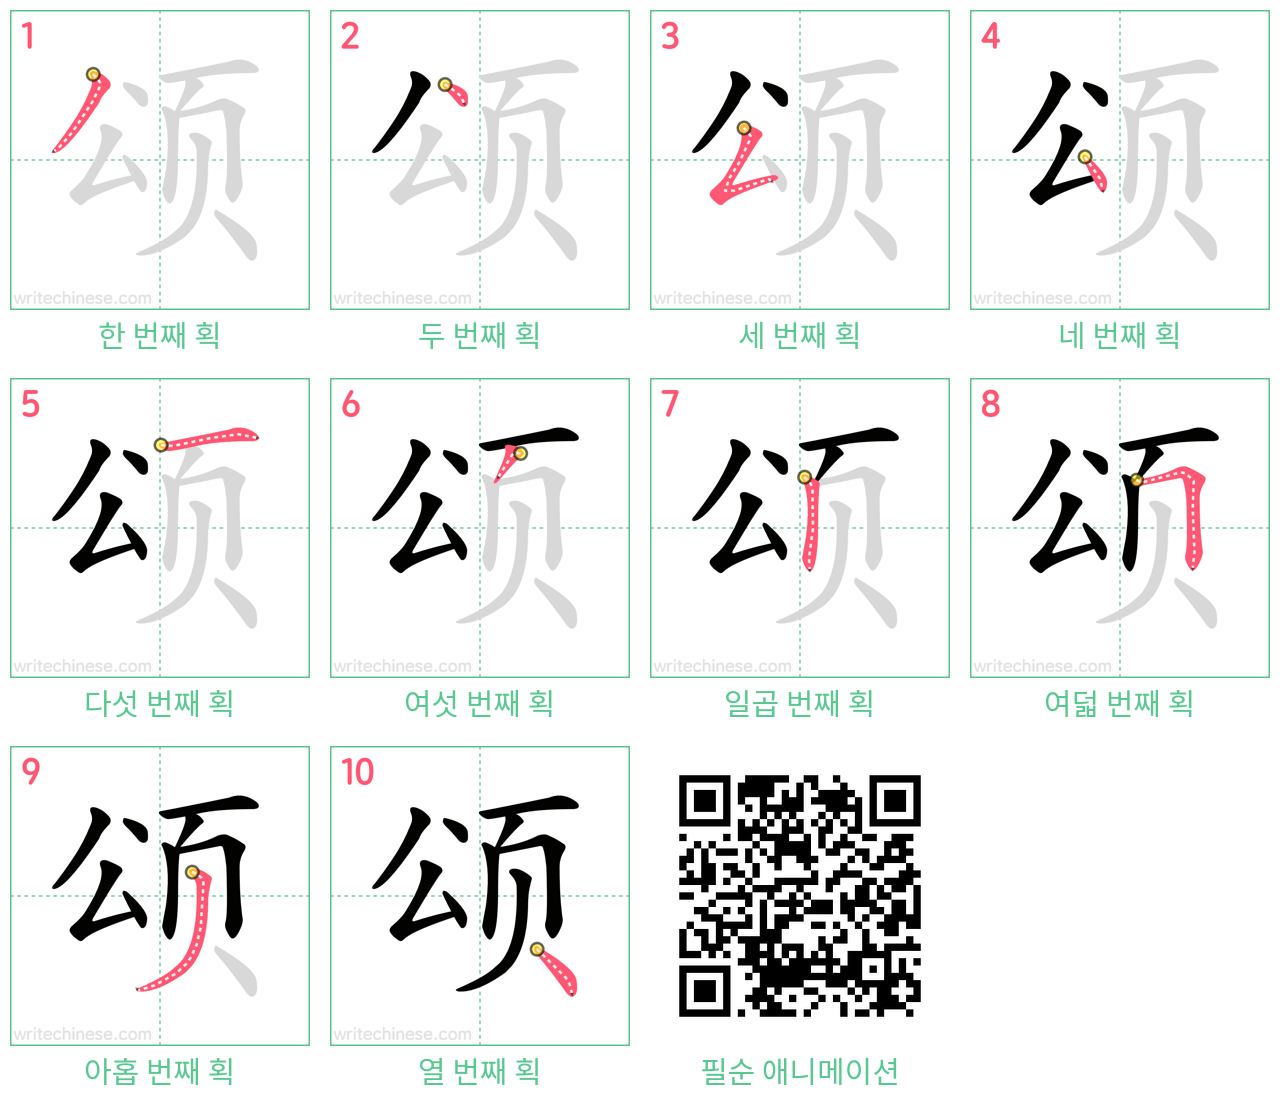 颂 step-by-step stroke order diagrams